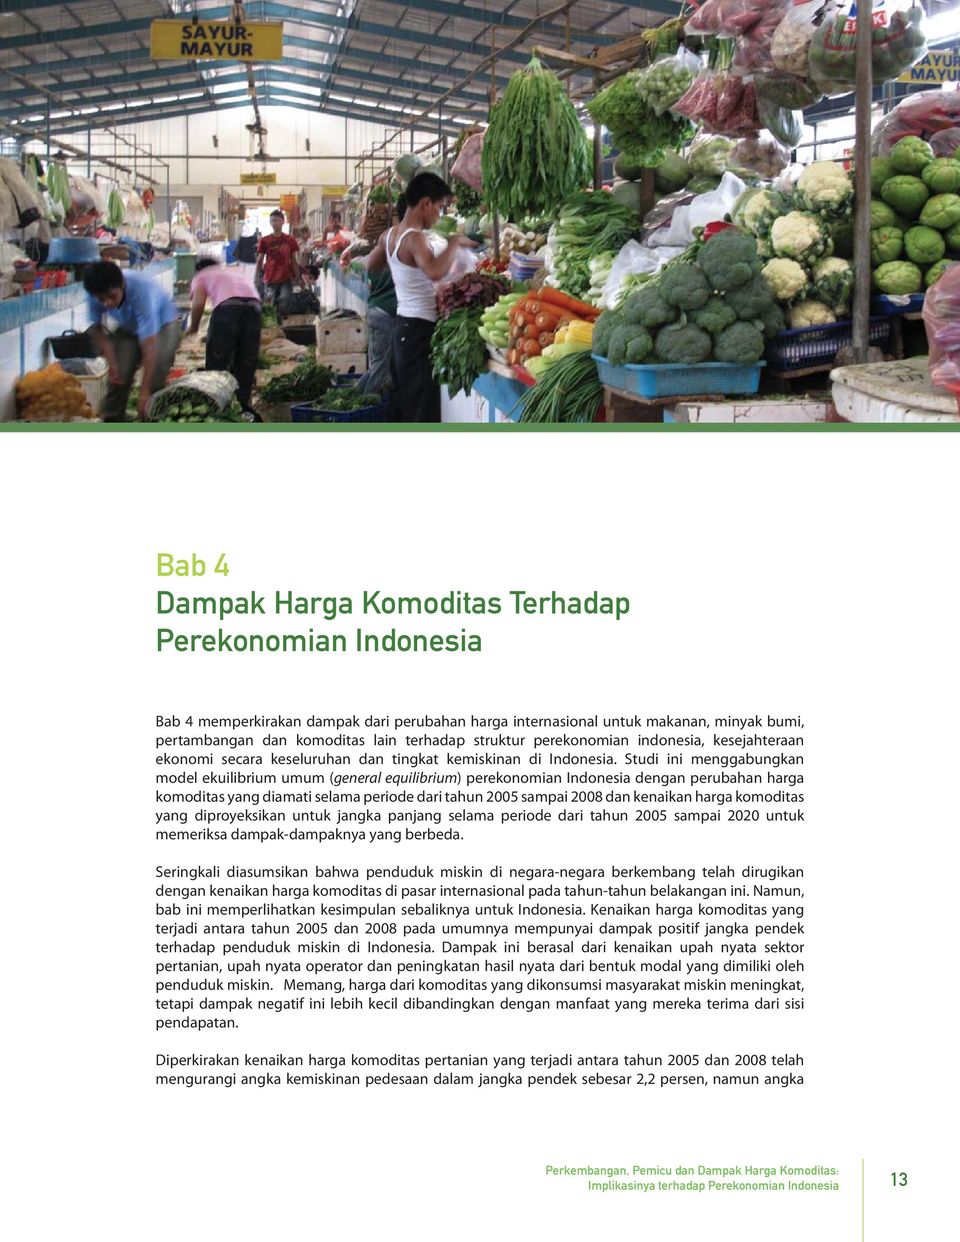 Studi ini menggabungkan model ekuilibrium umum (general equilibrium) perekonomian Indonesia dengan perubahan harga komoditas yang diamati selama periode dari tahun 2005 sampai 2008 dan kenaikan harga